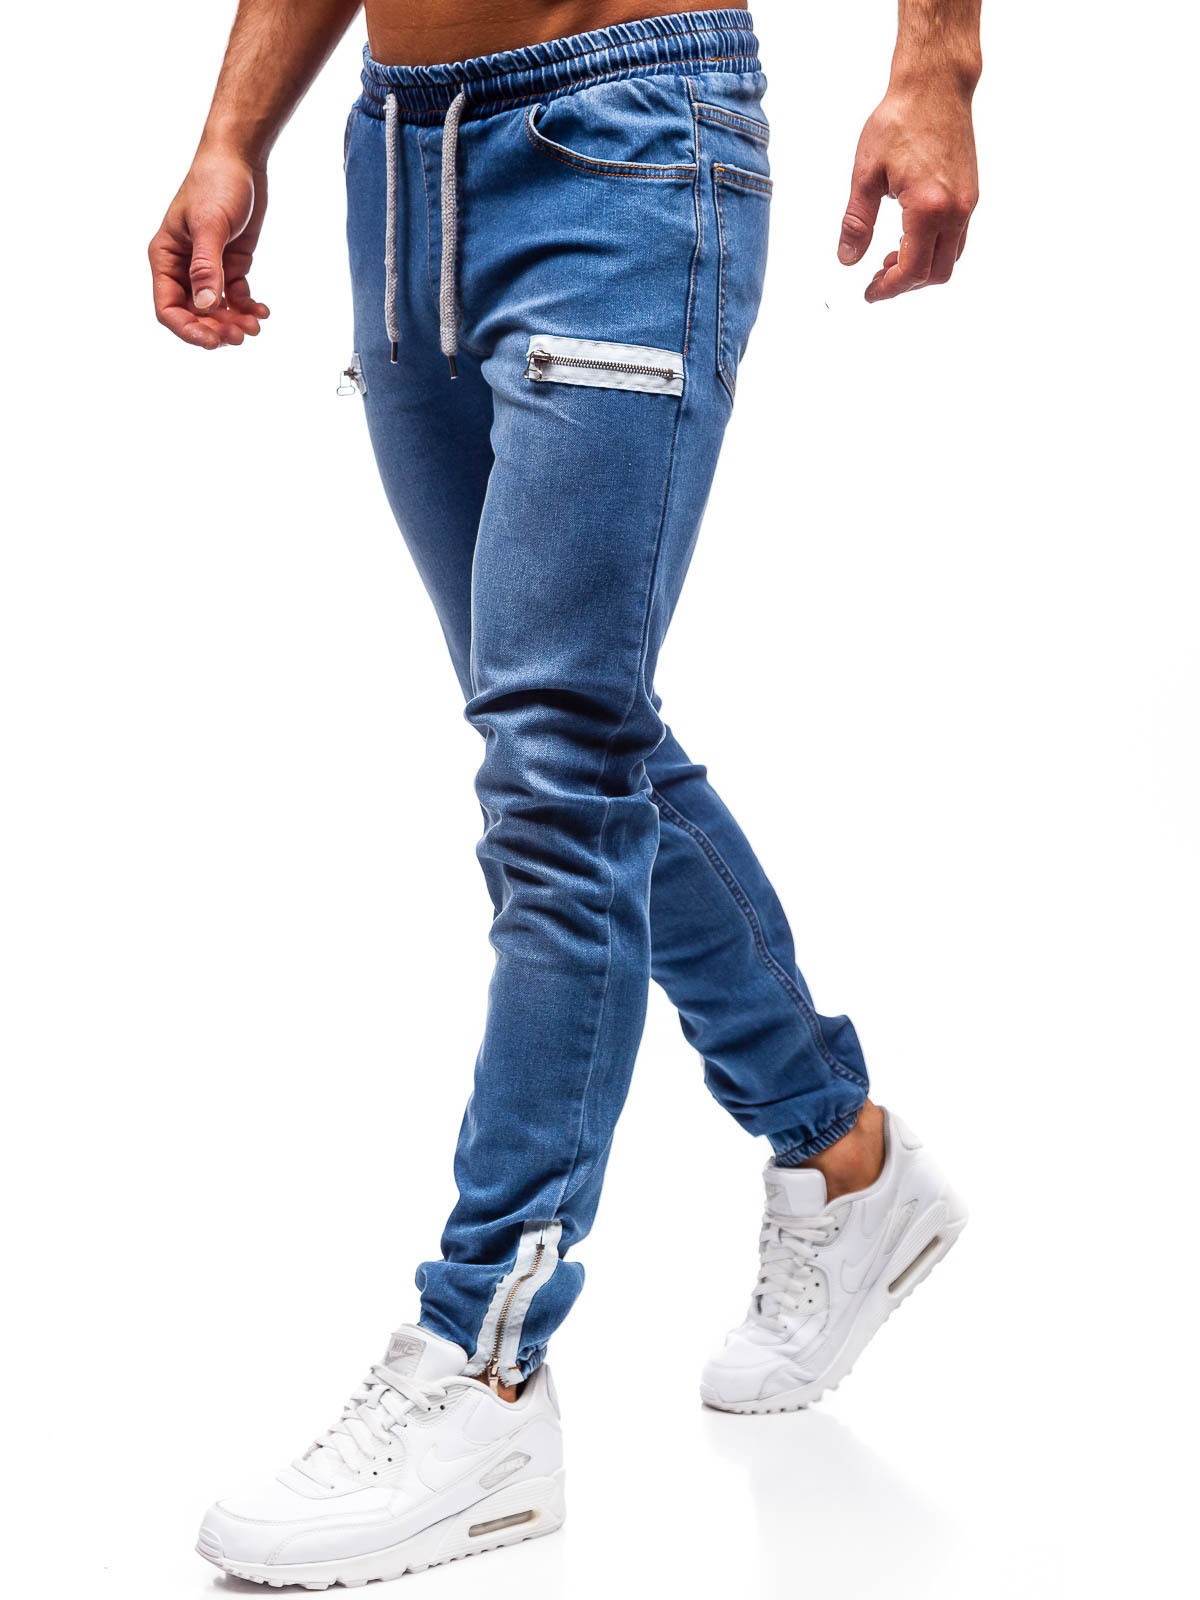 Мужские джинсы с замками